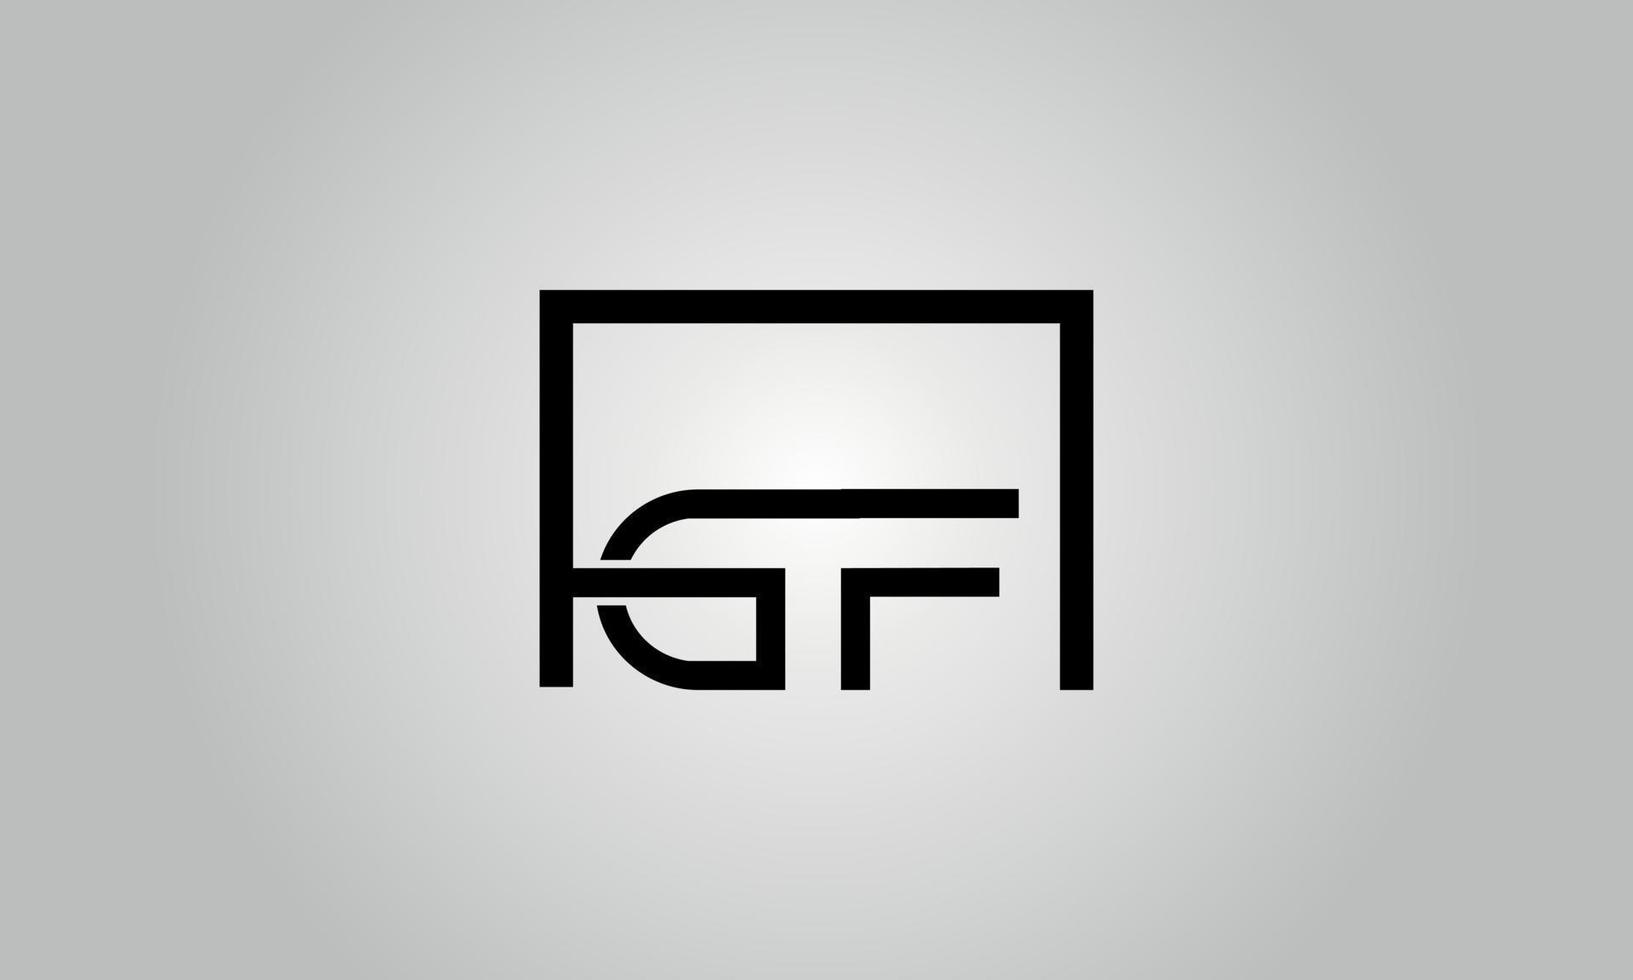 design de logotipo carta gf. gf logotipo com forma quadrada em cores pretas modelo de vetor livre.